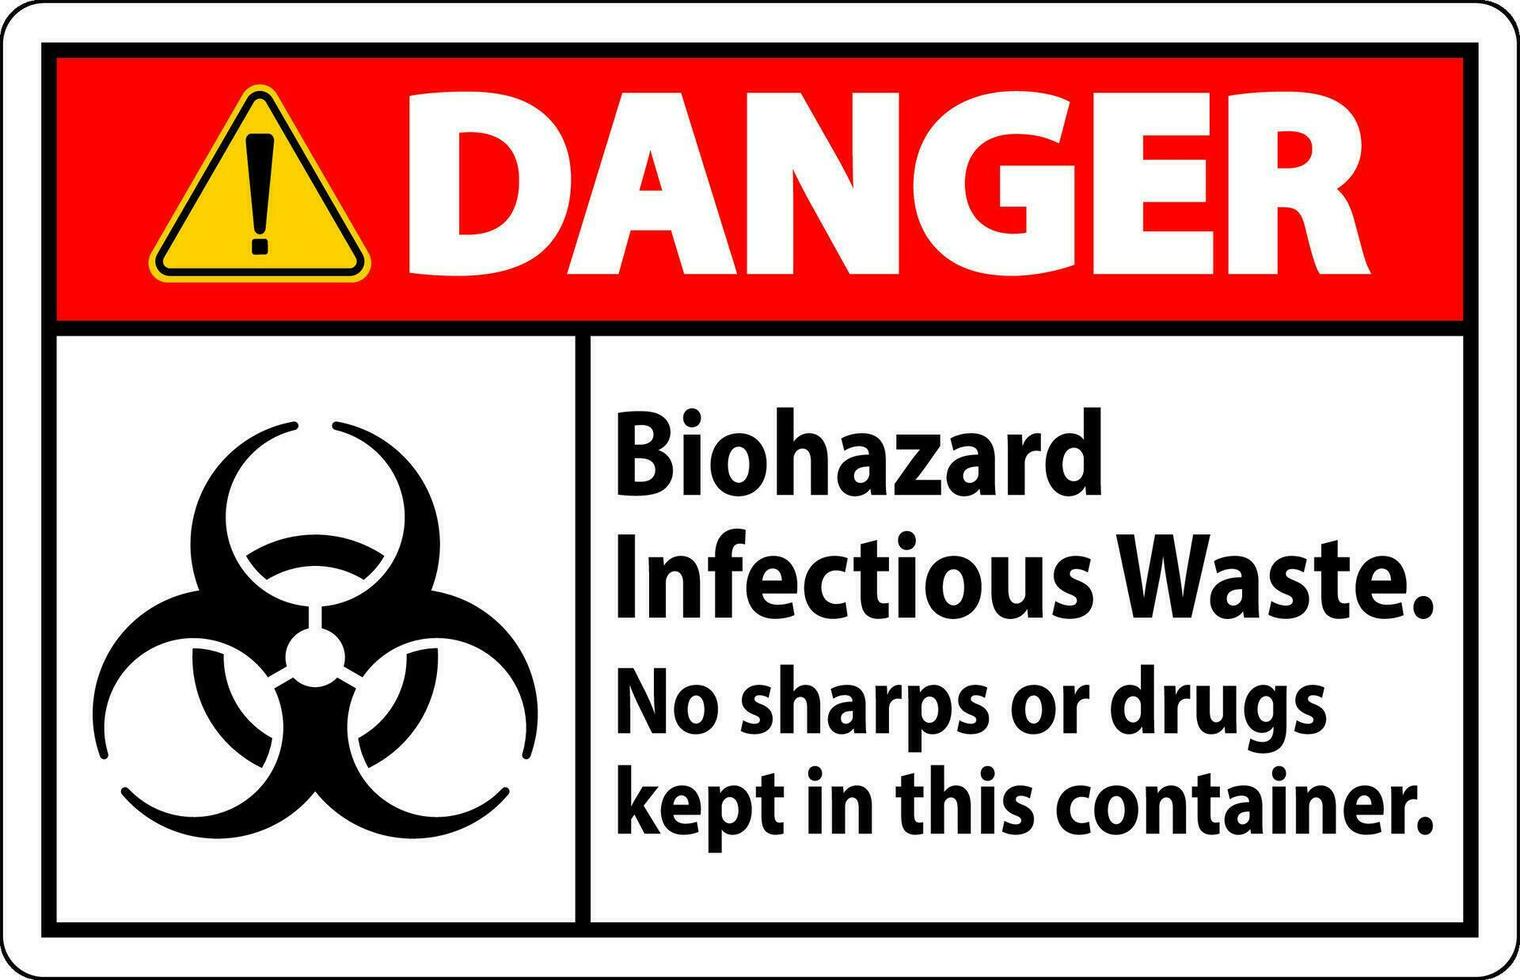 danger étiquette Danger biologique infectieux déchets, non tranchants ou drogues conservé dans cette récipient vecteur